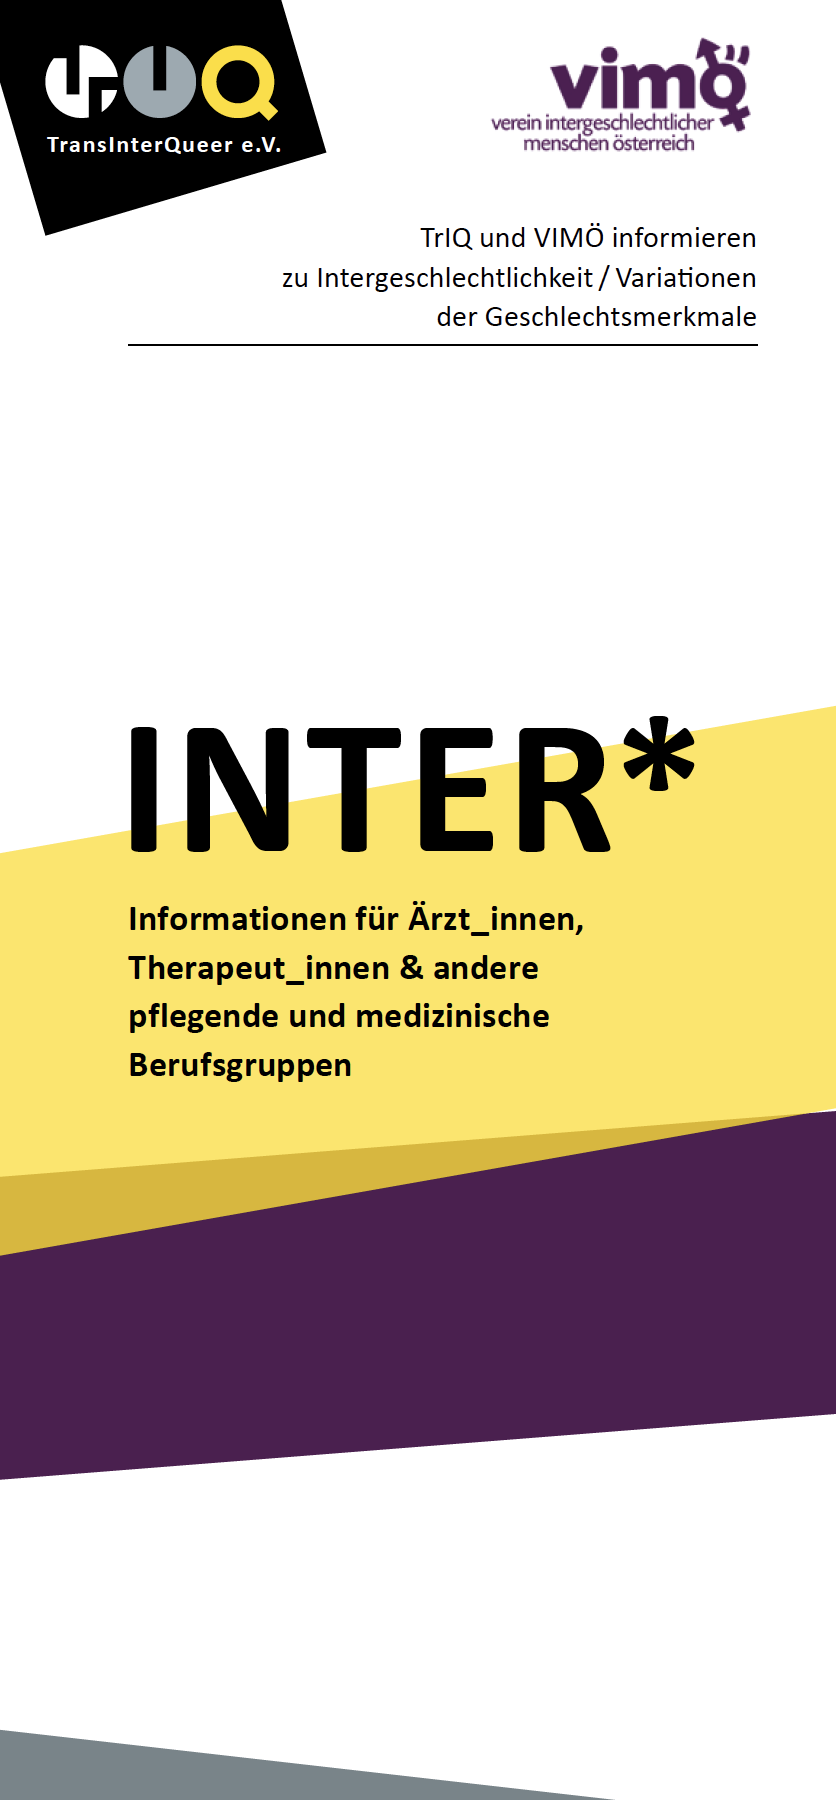 Inter* – Informationen für Ärzt_innen, Therapeut_innen & andere pflegende und medizinische Berufsgruppen